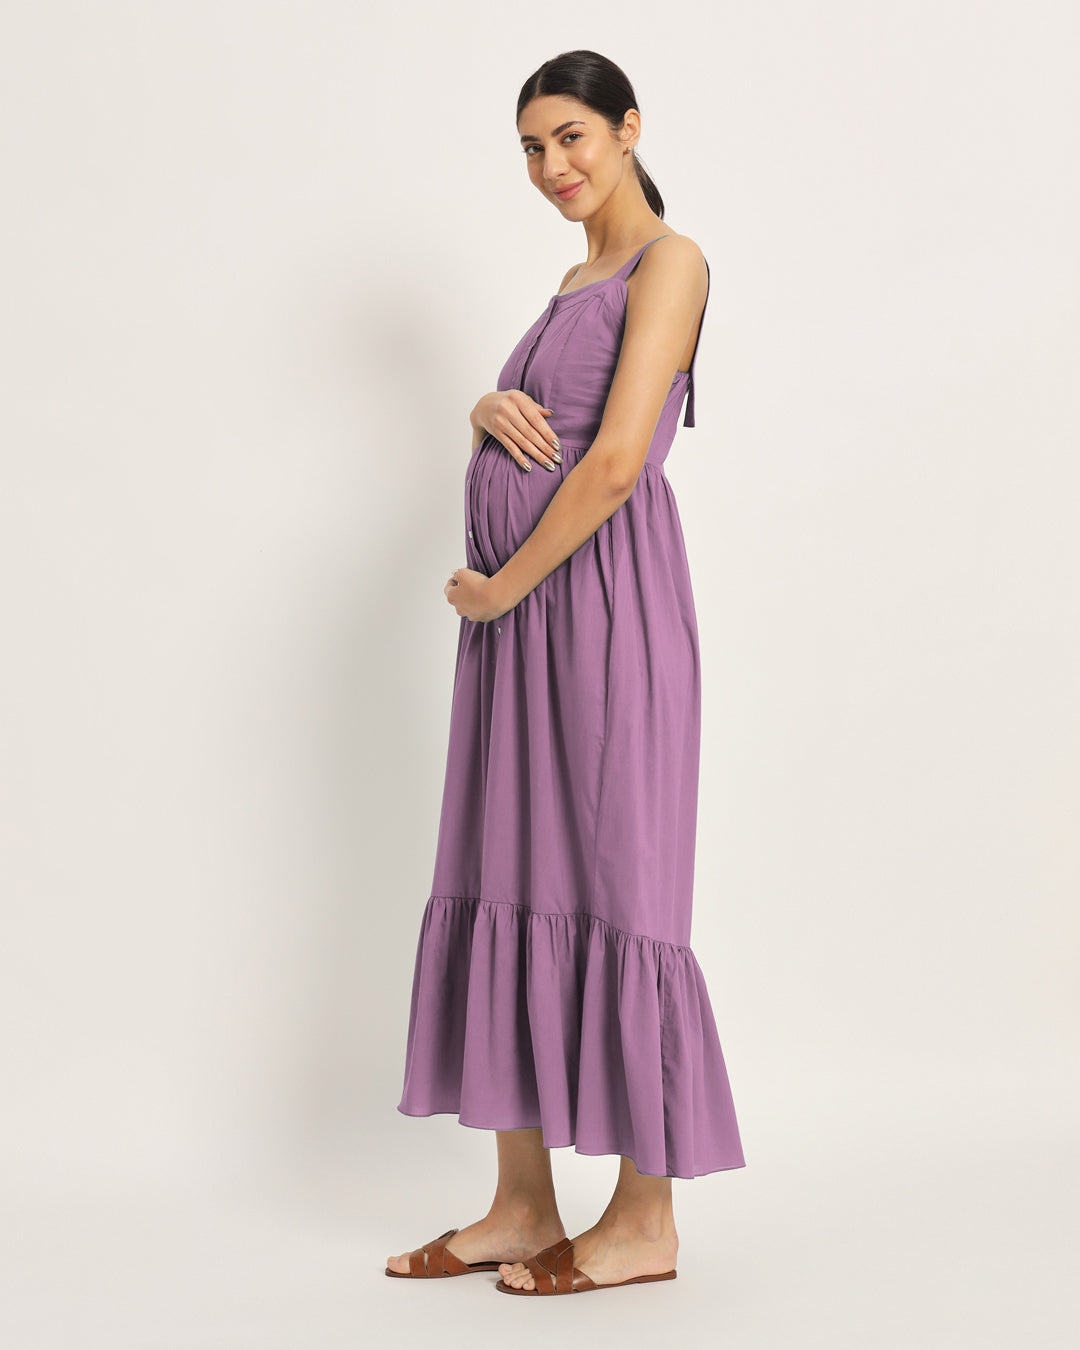 Combo: Iris Pink & Lilac Mama Modish Maternity & Nursing Dress